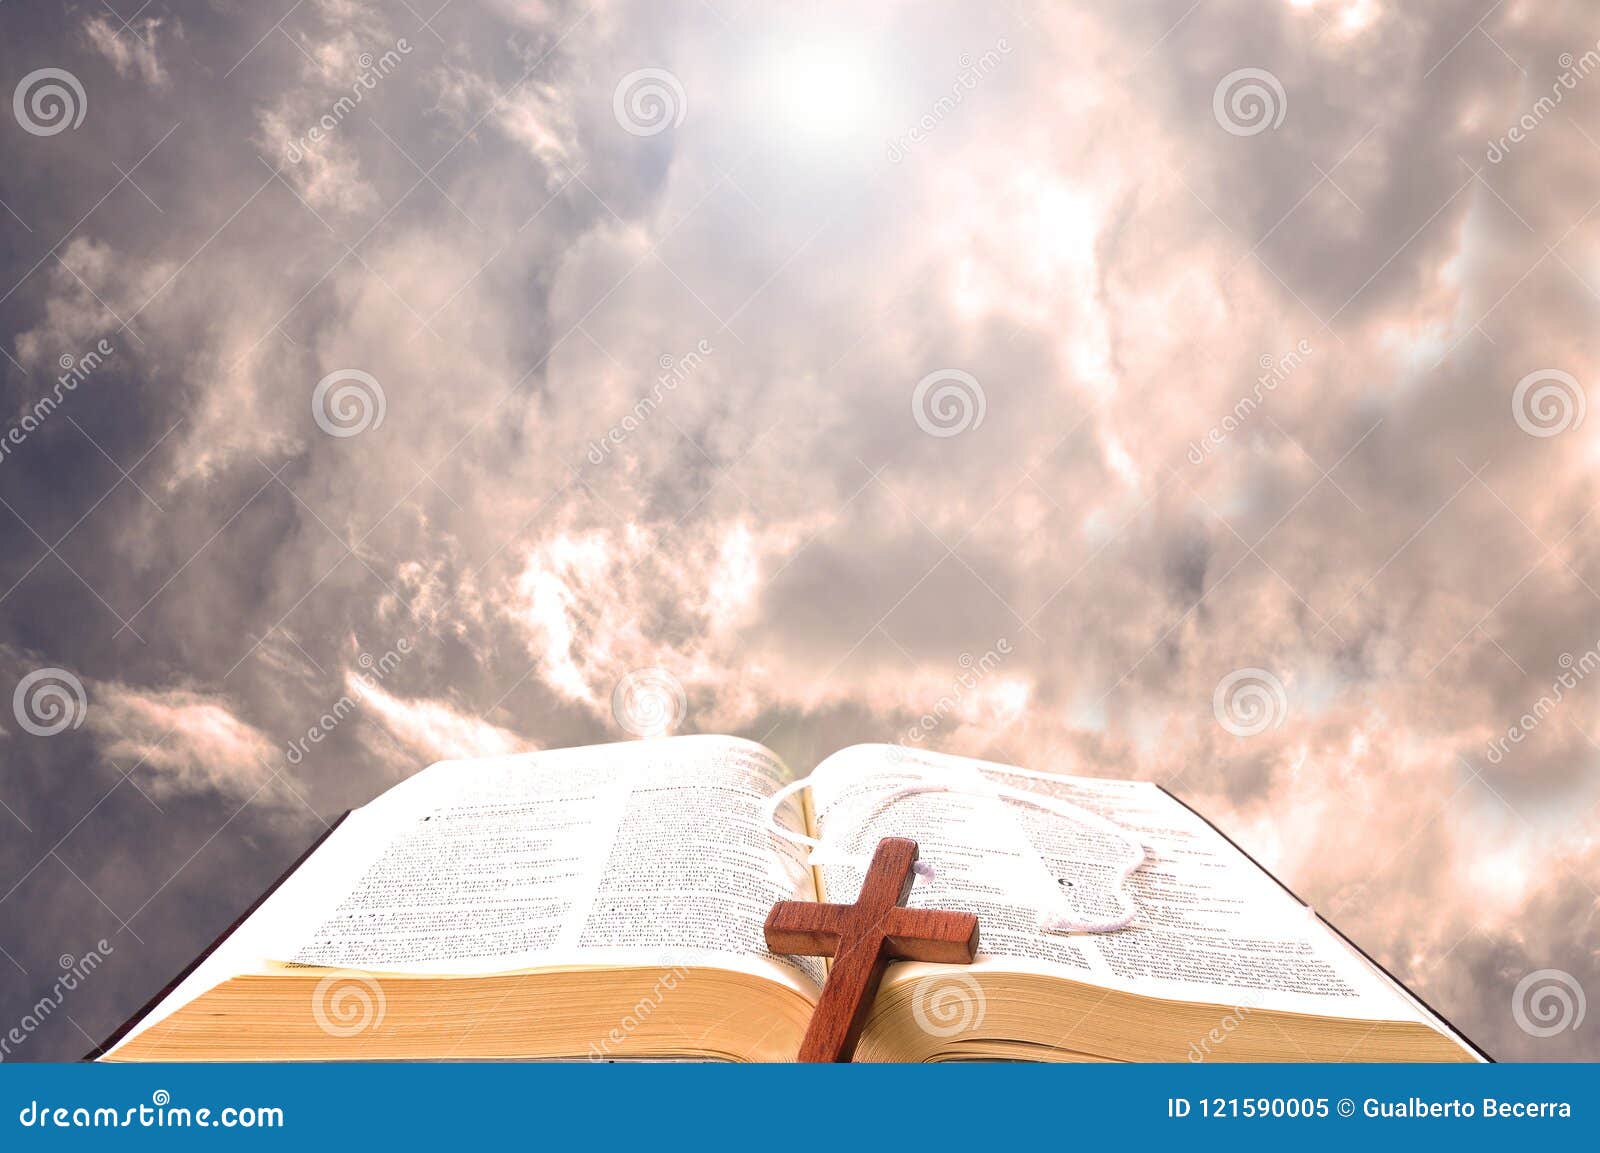 天堂般的神的圣经 库存图片. 图片 包括有 本质, 开放, 蓝色, 书目, 赞美诗, 宗教, 场面, 称谓 - 80150615